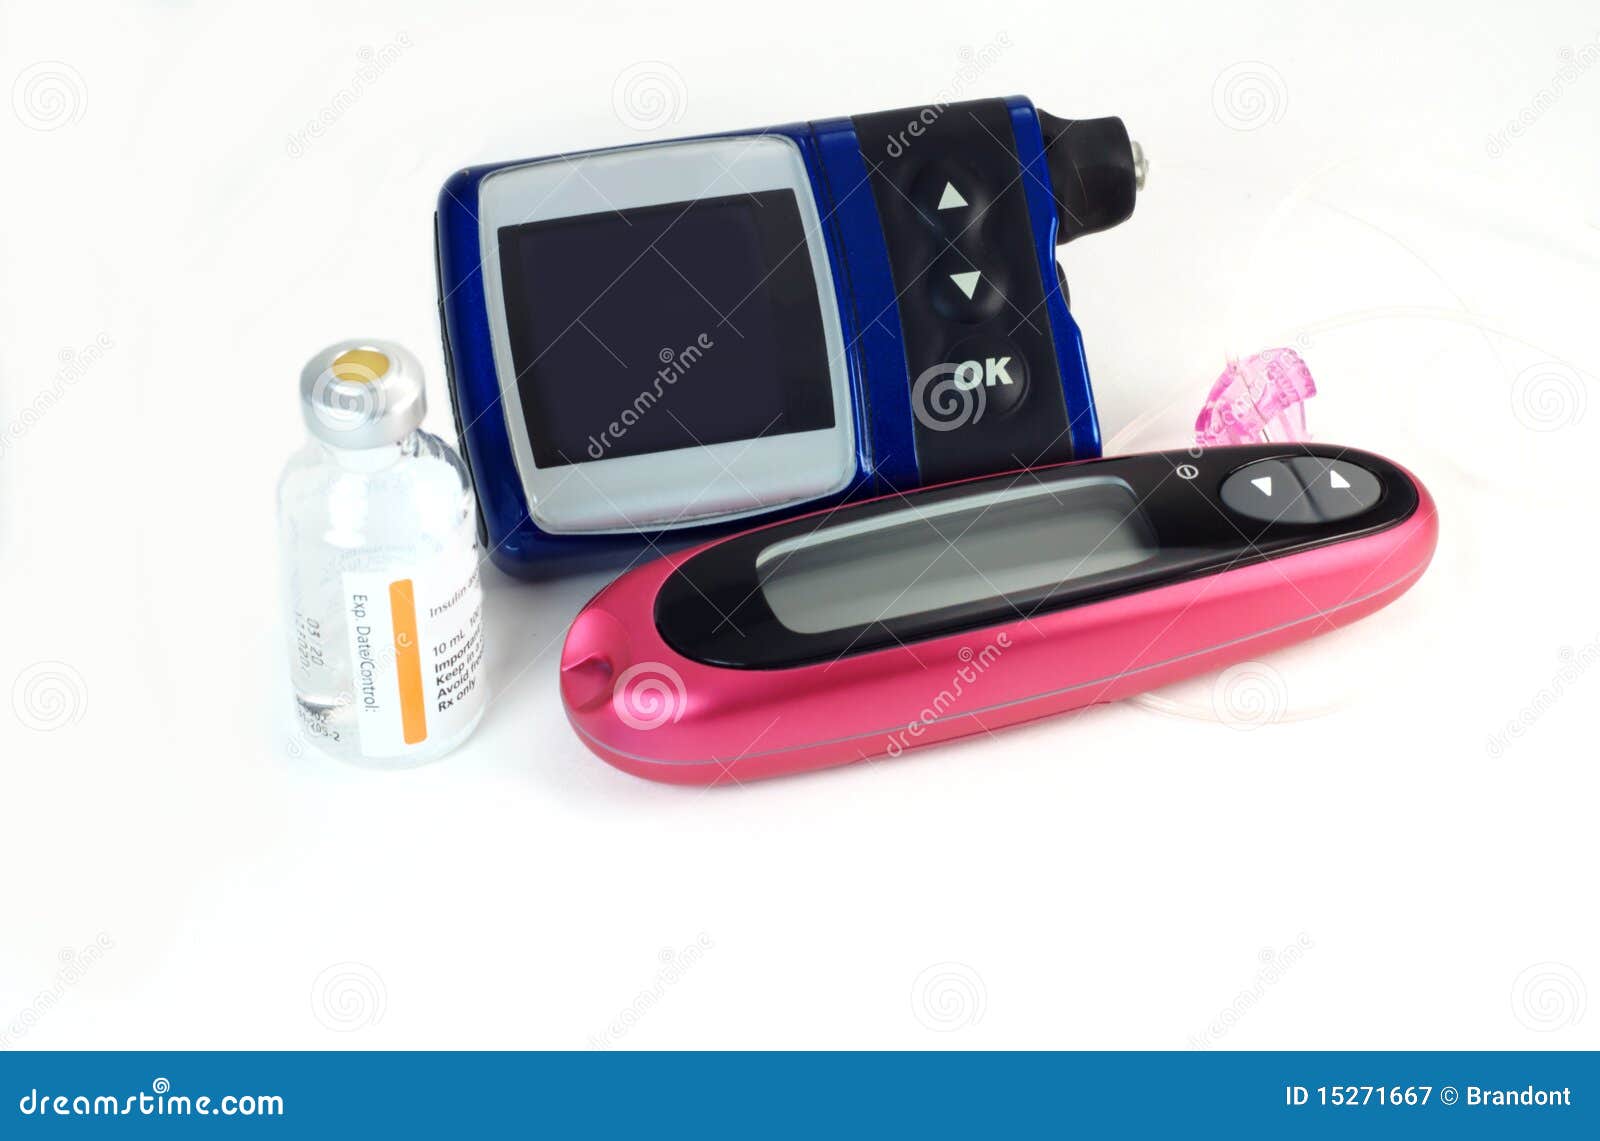 diabetic meters